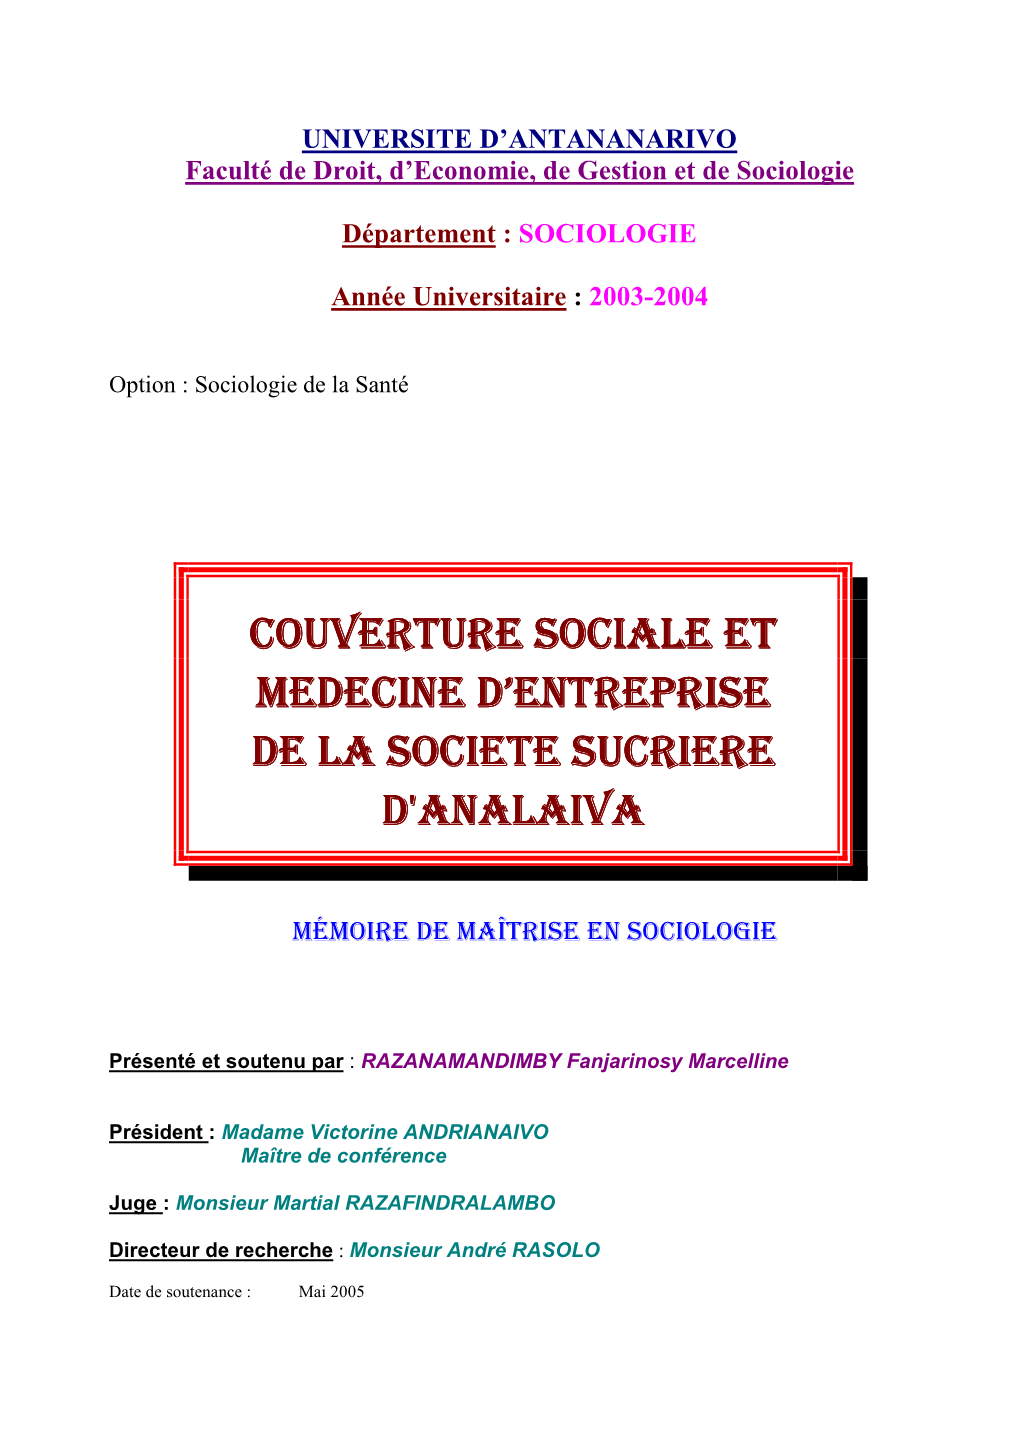 Couverture Sociale Et Medecine D'entreprise De La Societe Sucriere D'analaiva